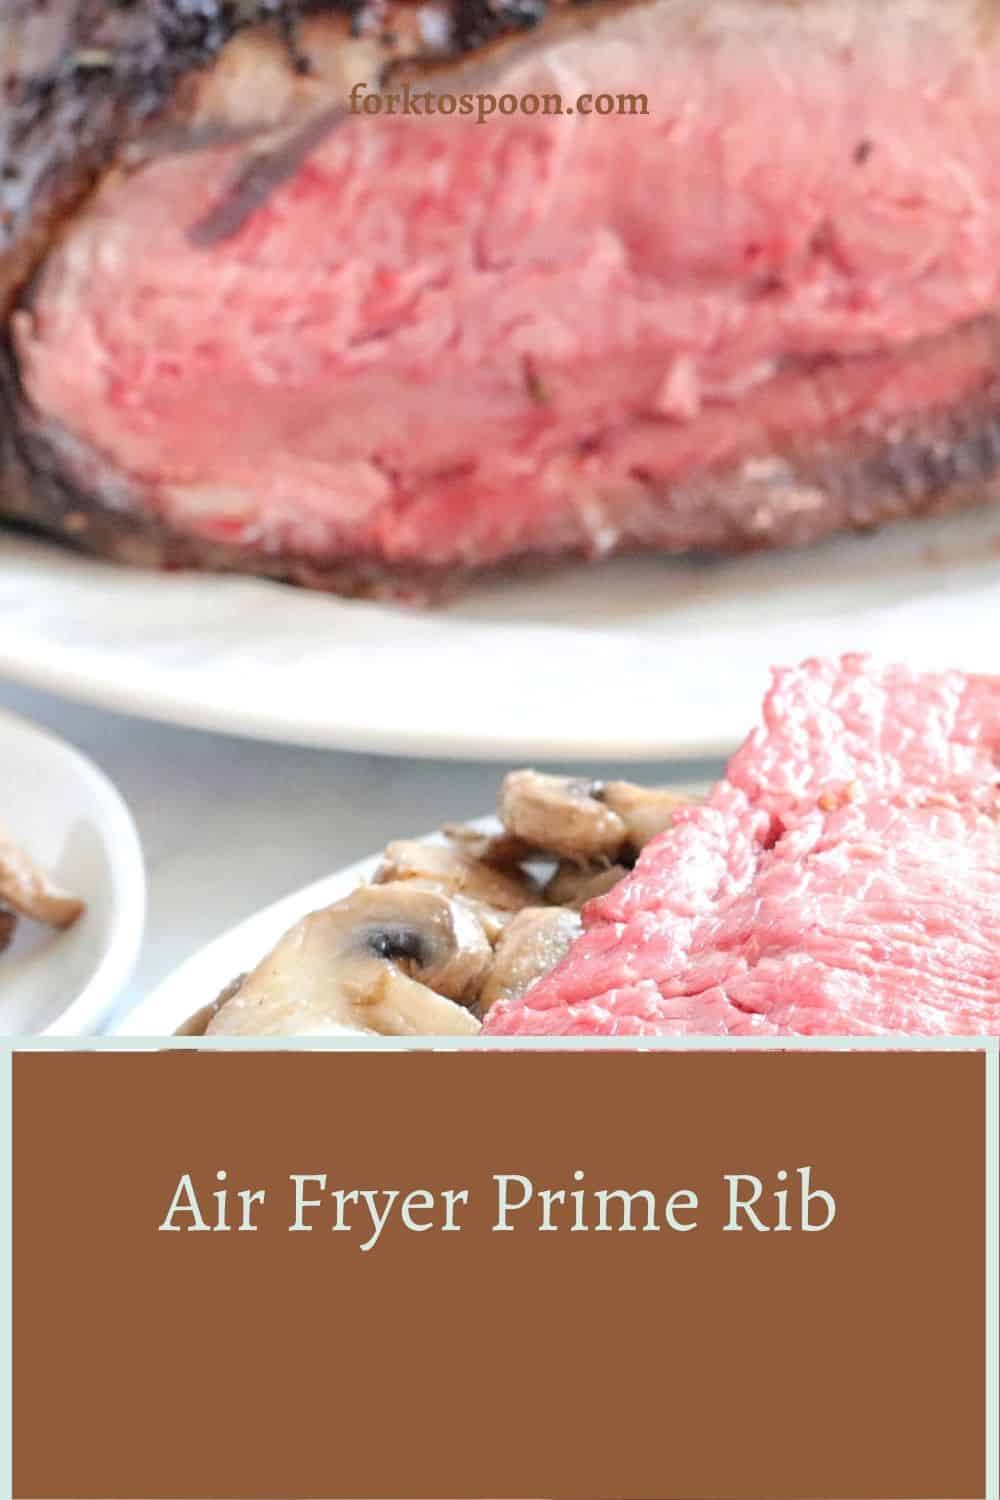 Air Fryer Prime Rib Roast Beef Story – The Sassy Foodie